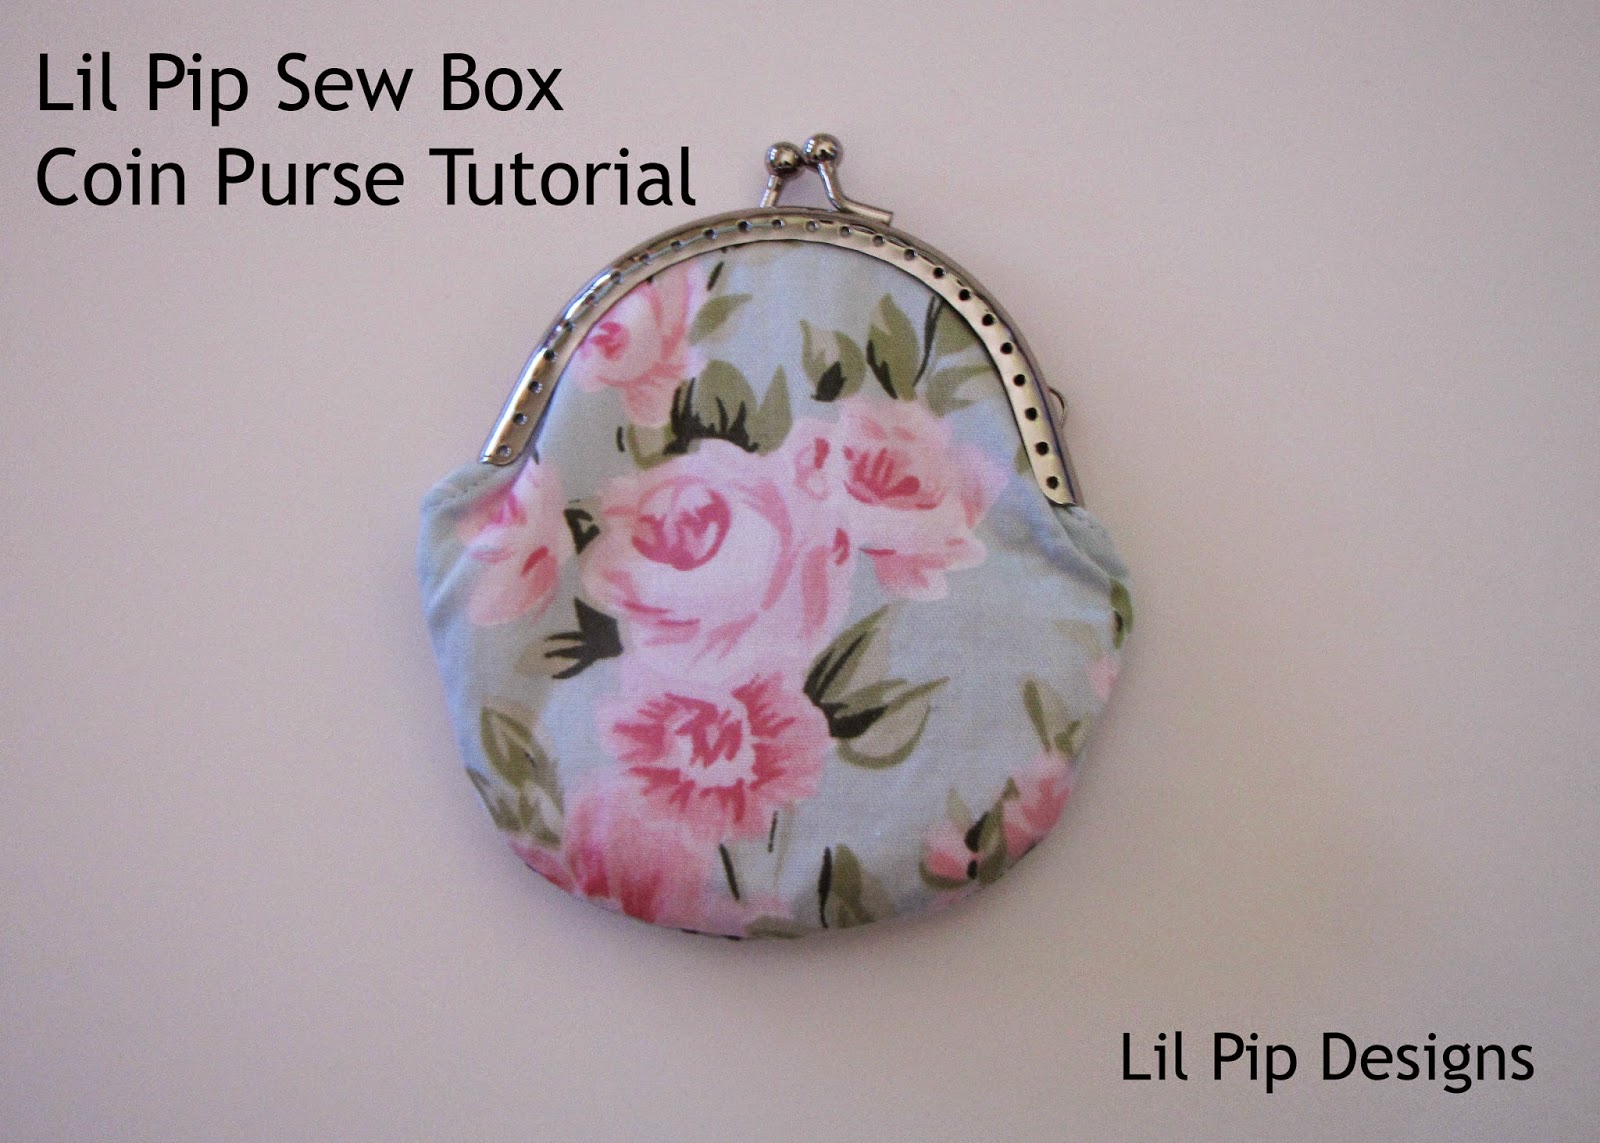 Lil Pip Designs: Lil Pip Sew Box Metal Frame Coin Purse Tutorial